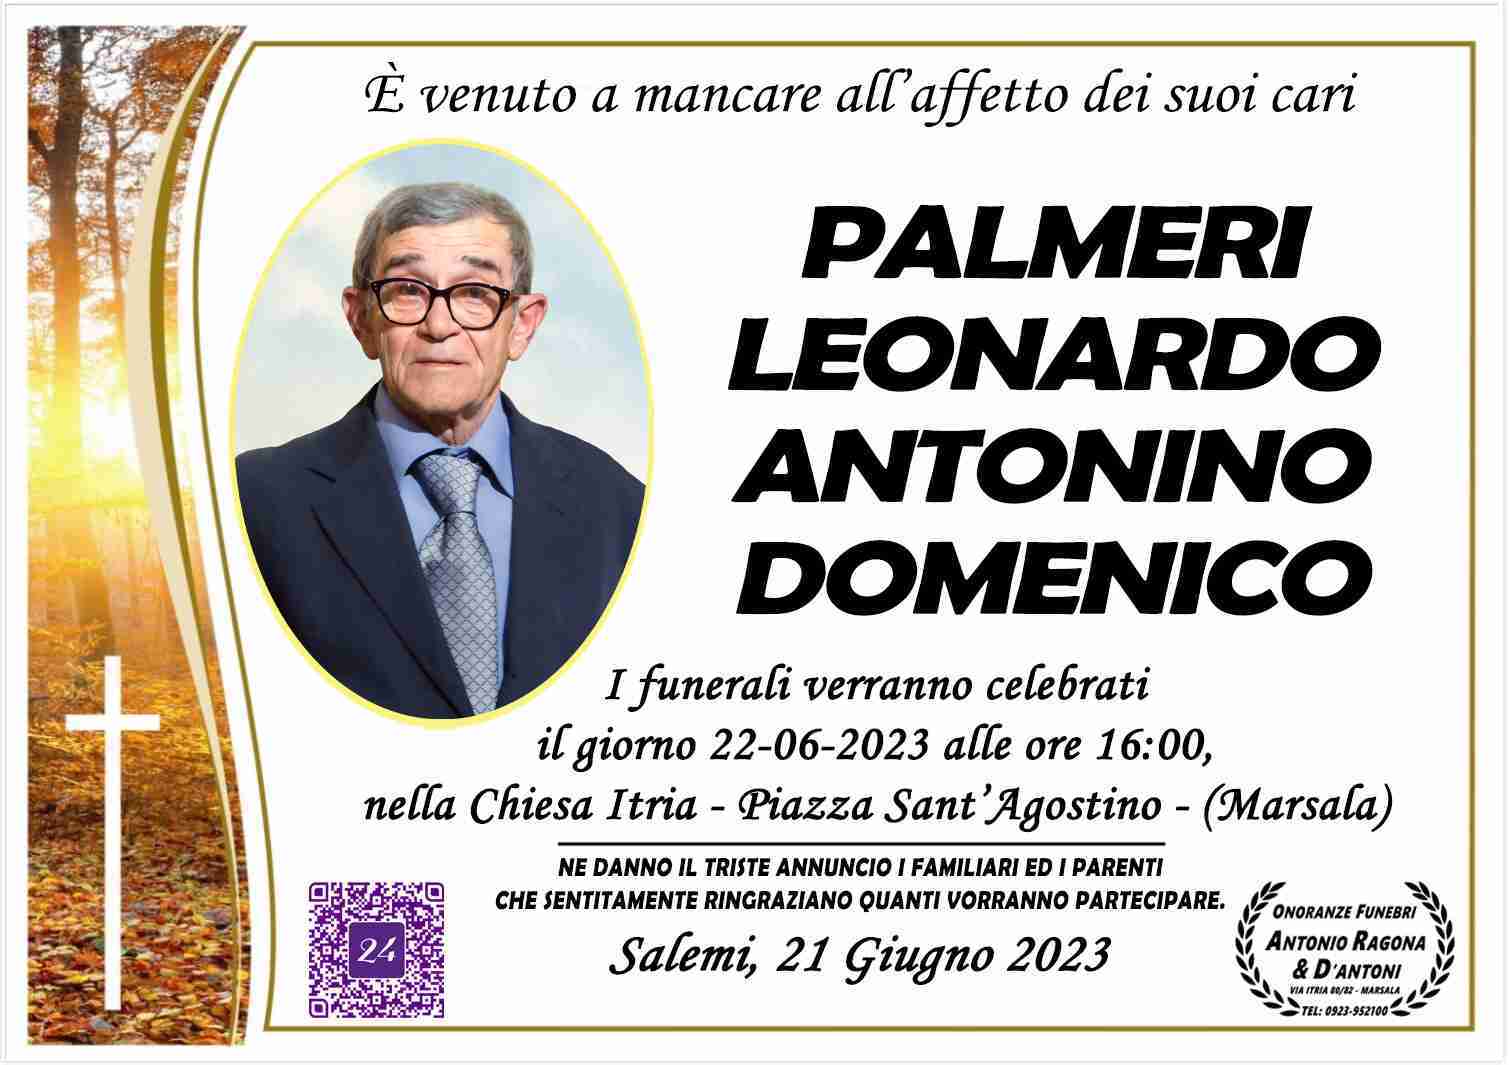 Leonardo Antonino Domenico Palmeri